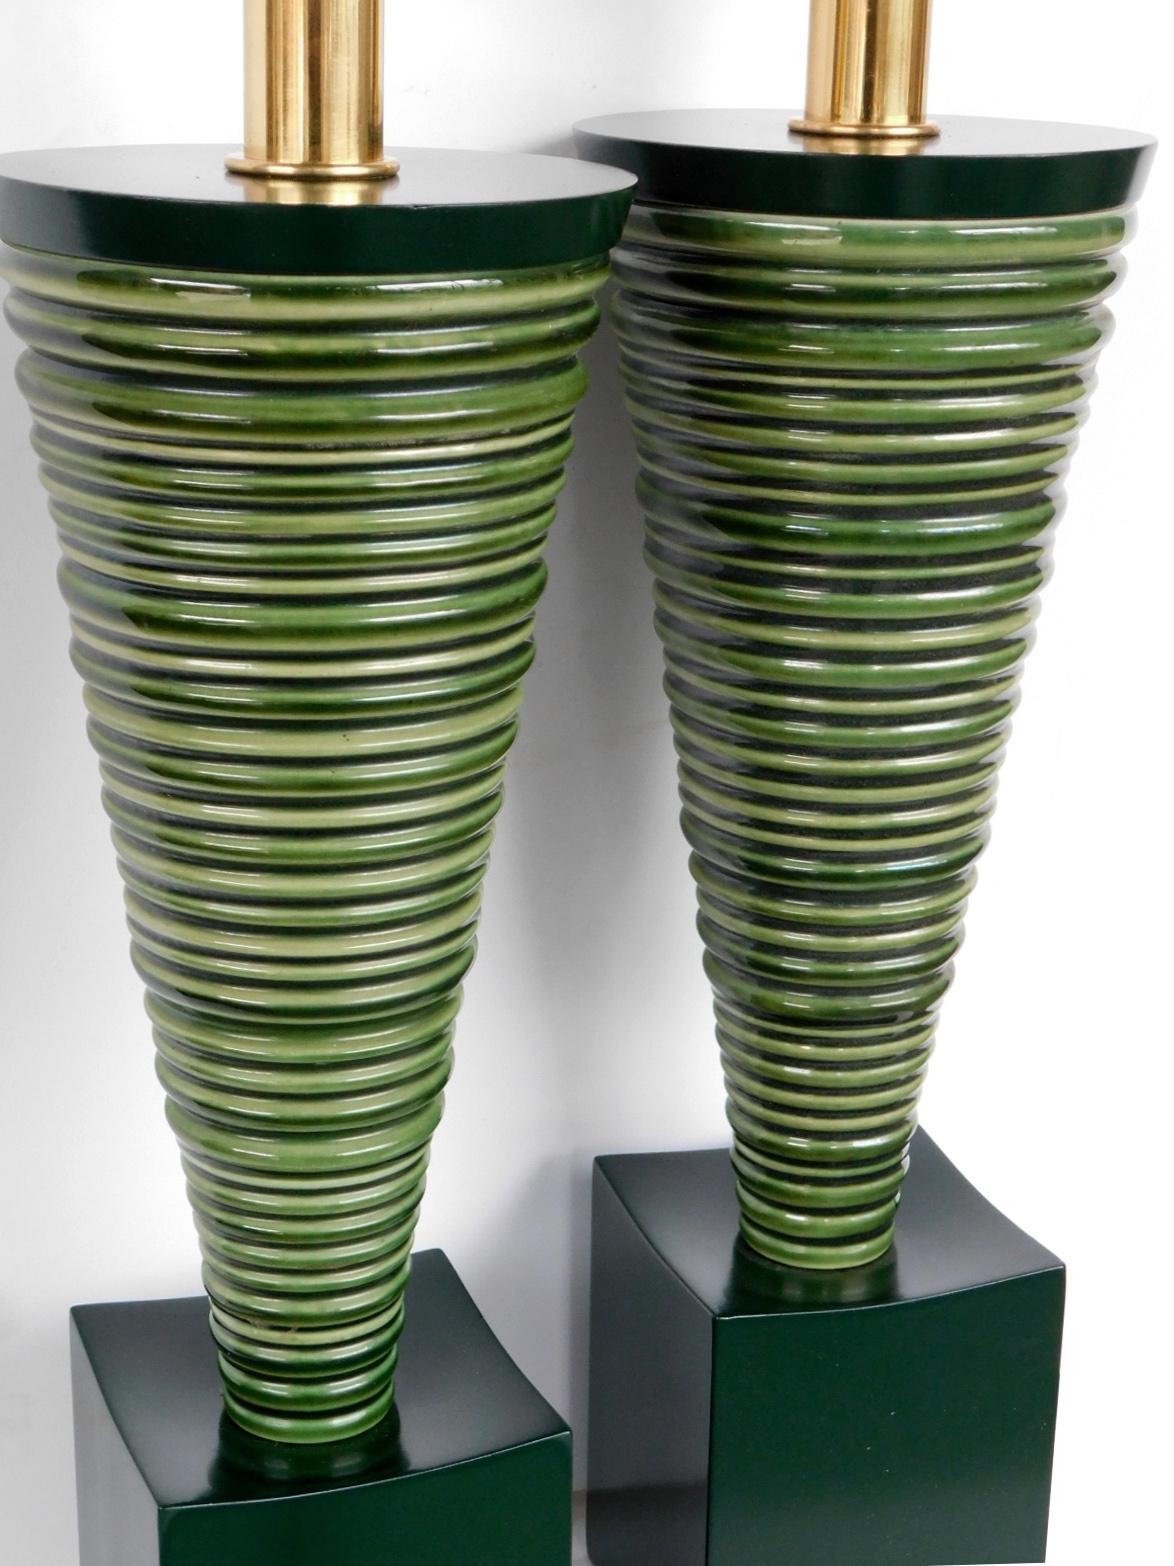 Großartiges Design aus der Mitte des Jahrhunderts, jede gerippte, konisch geformte Keramiklampe ruht auf einem konkaven, waldgrün lackierten Holzsockel; Maße: 17